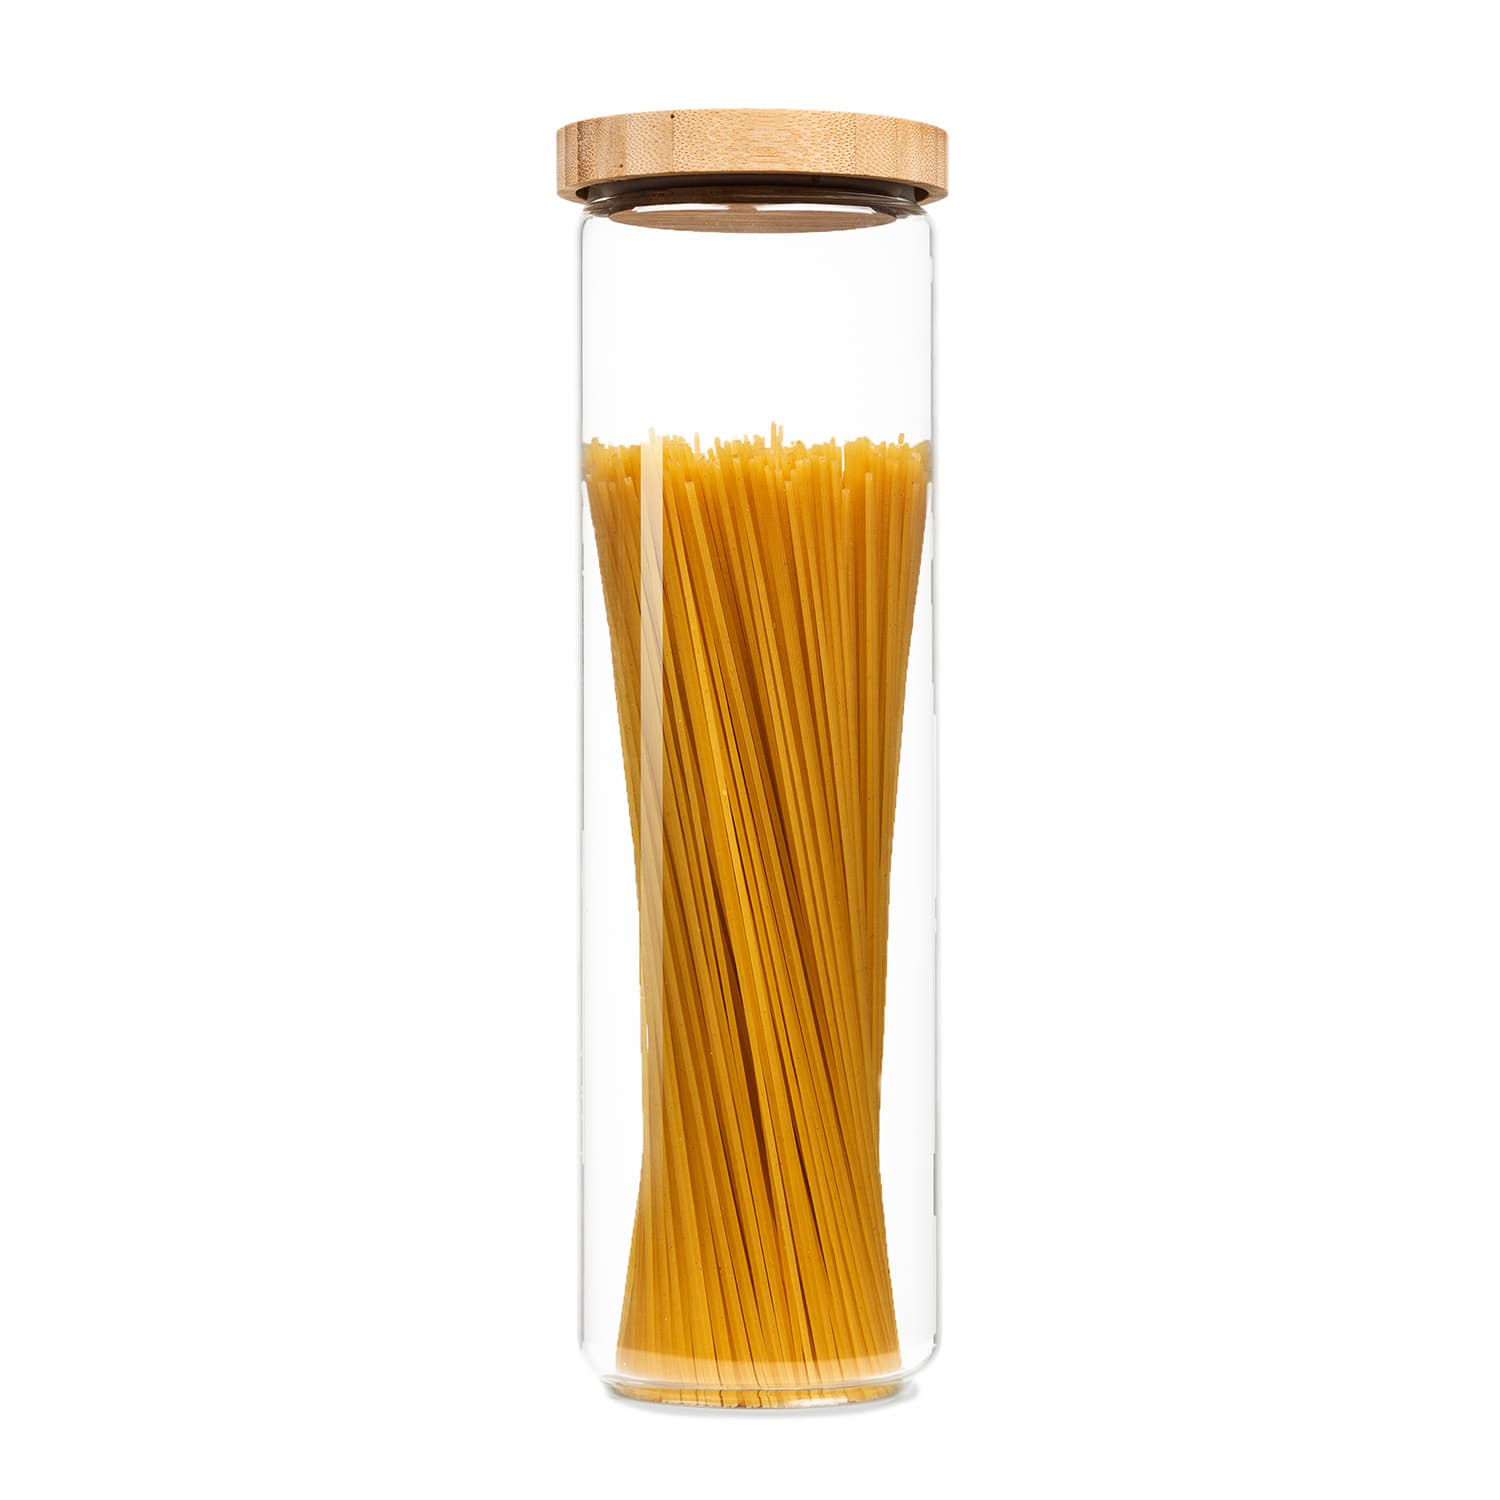 Klarstein Stapelglas mit Bambusdeckel 1700 ml stapelbar luftdicht BW-10273-010